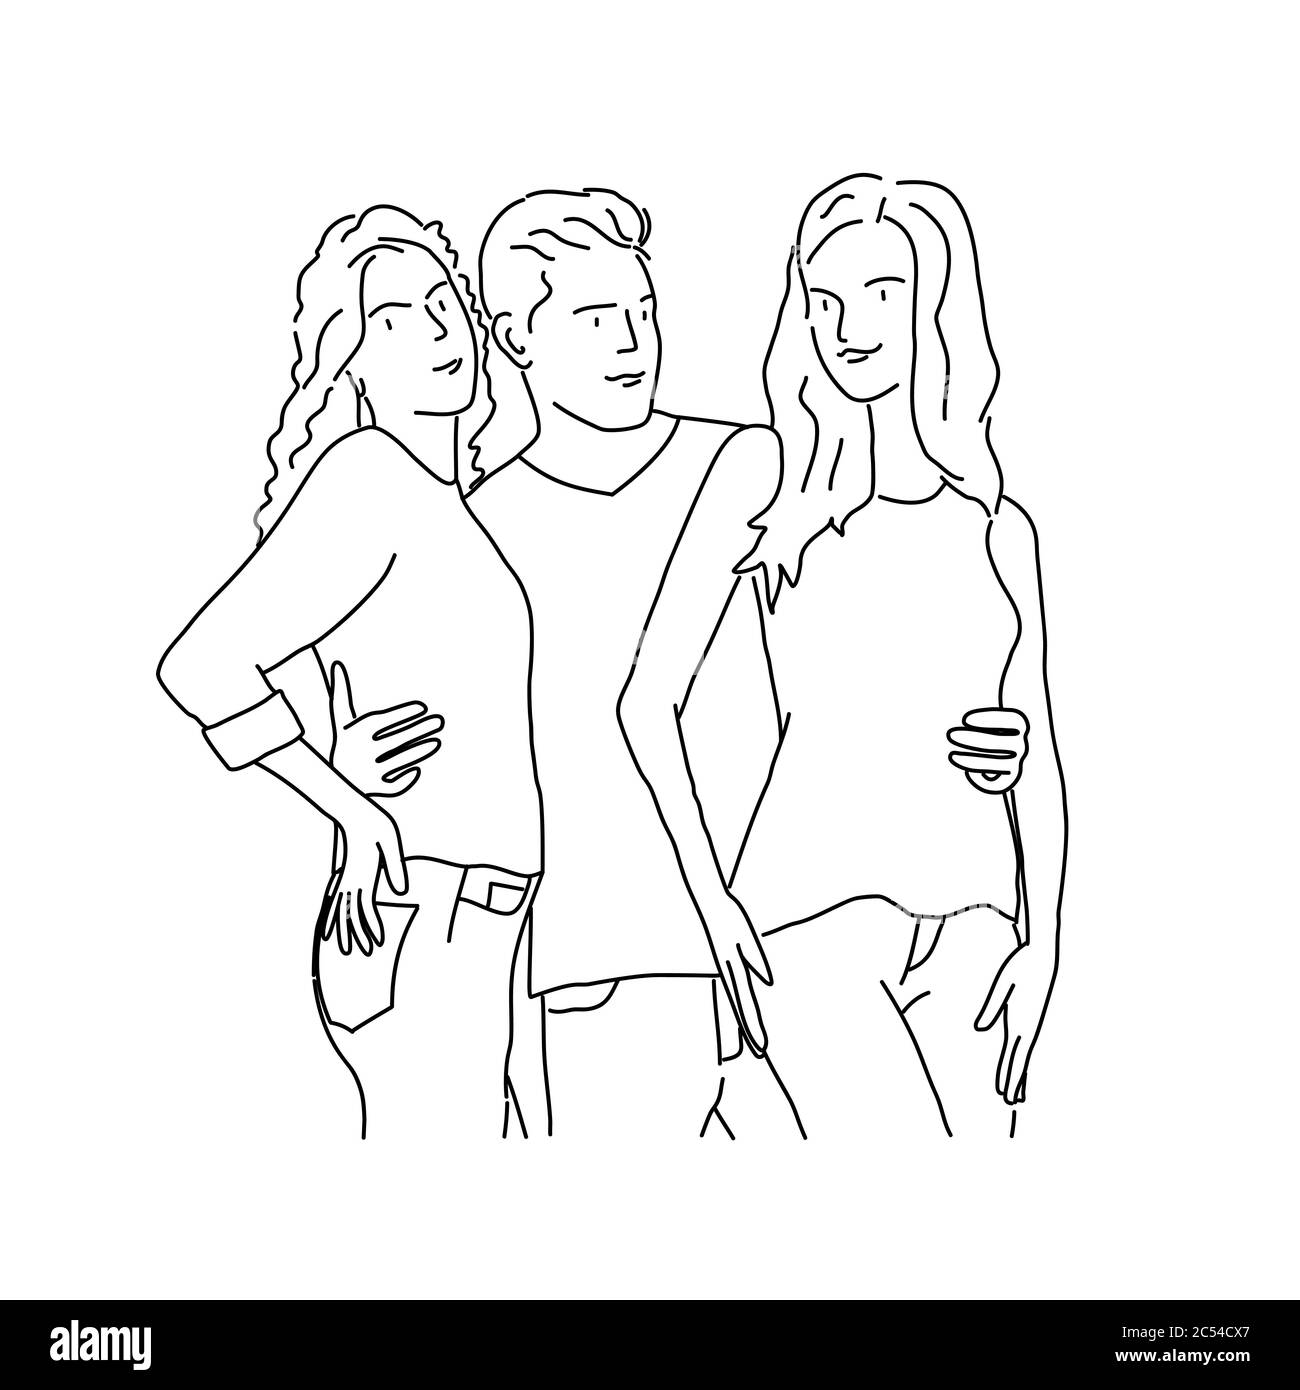 Linienzeichnung des Mannes umarmt zwei Mädchen. Vektorgrafik. Stock Vektor